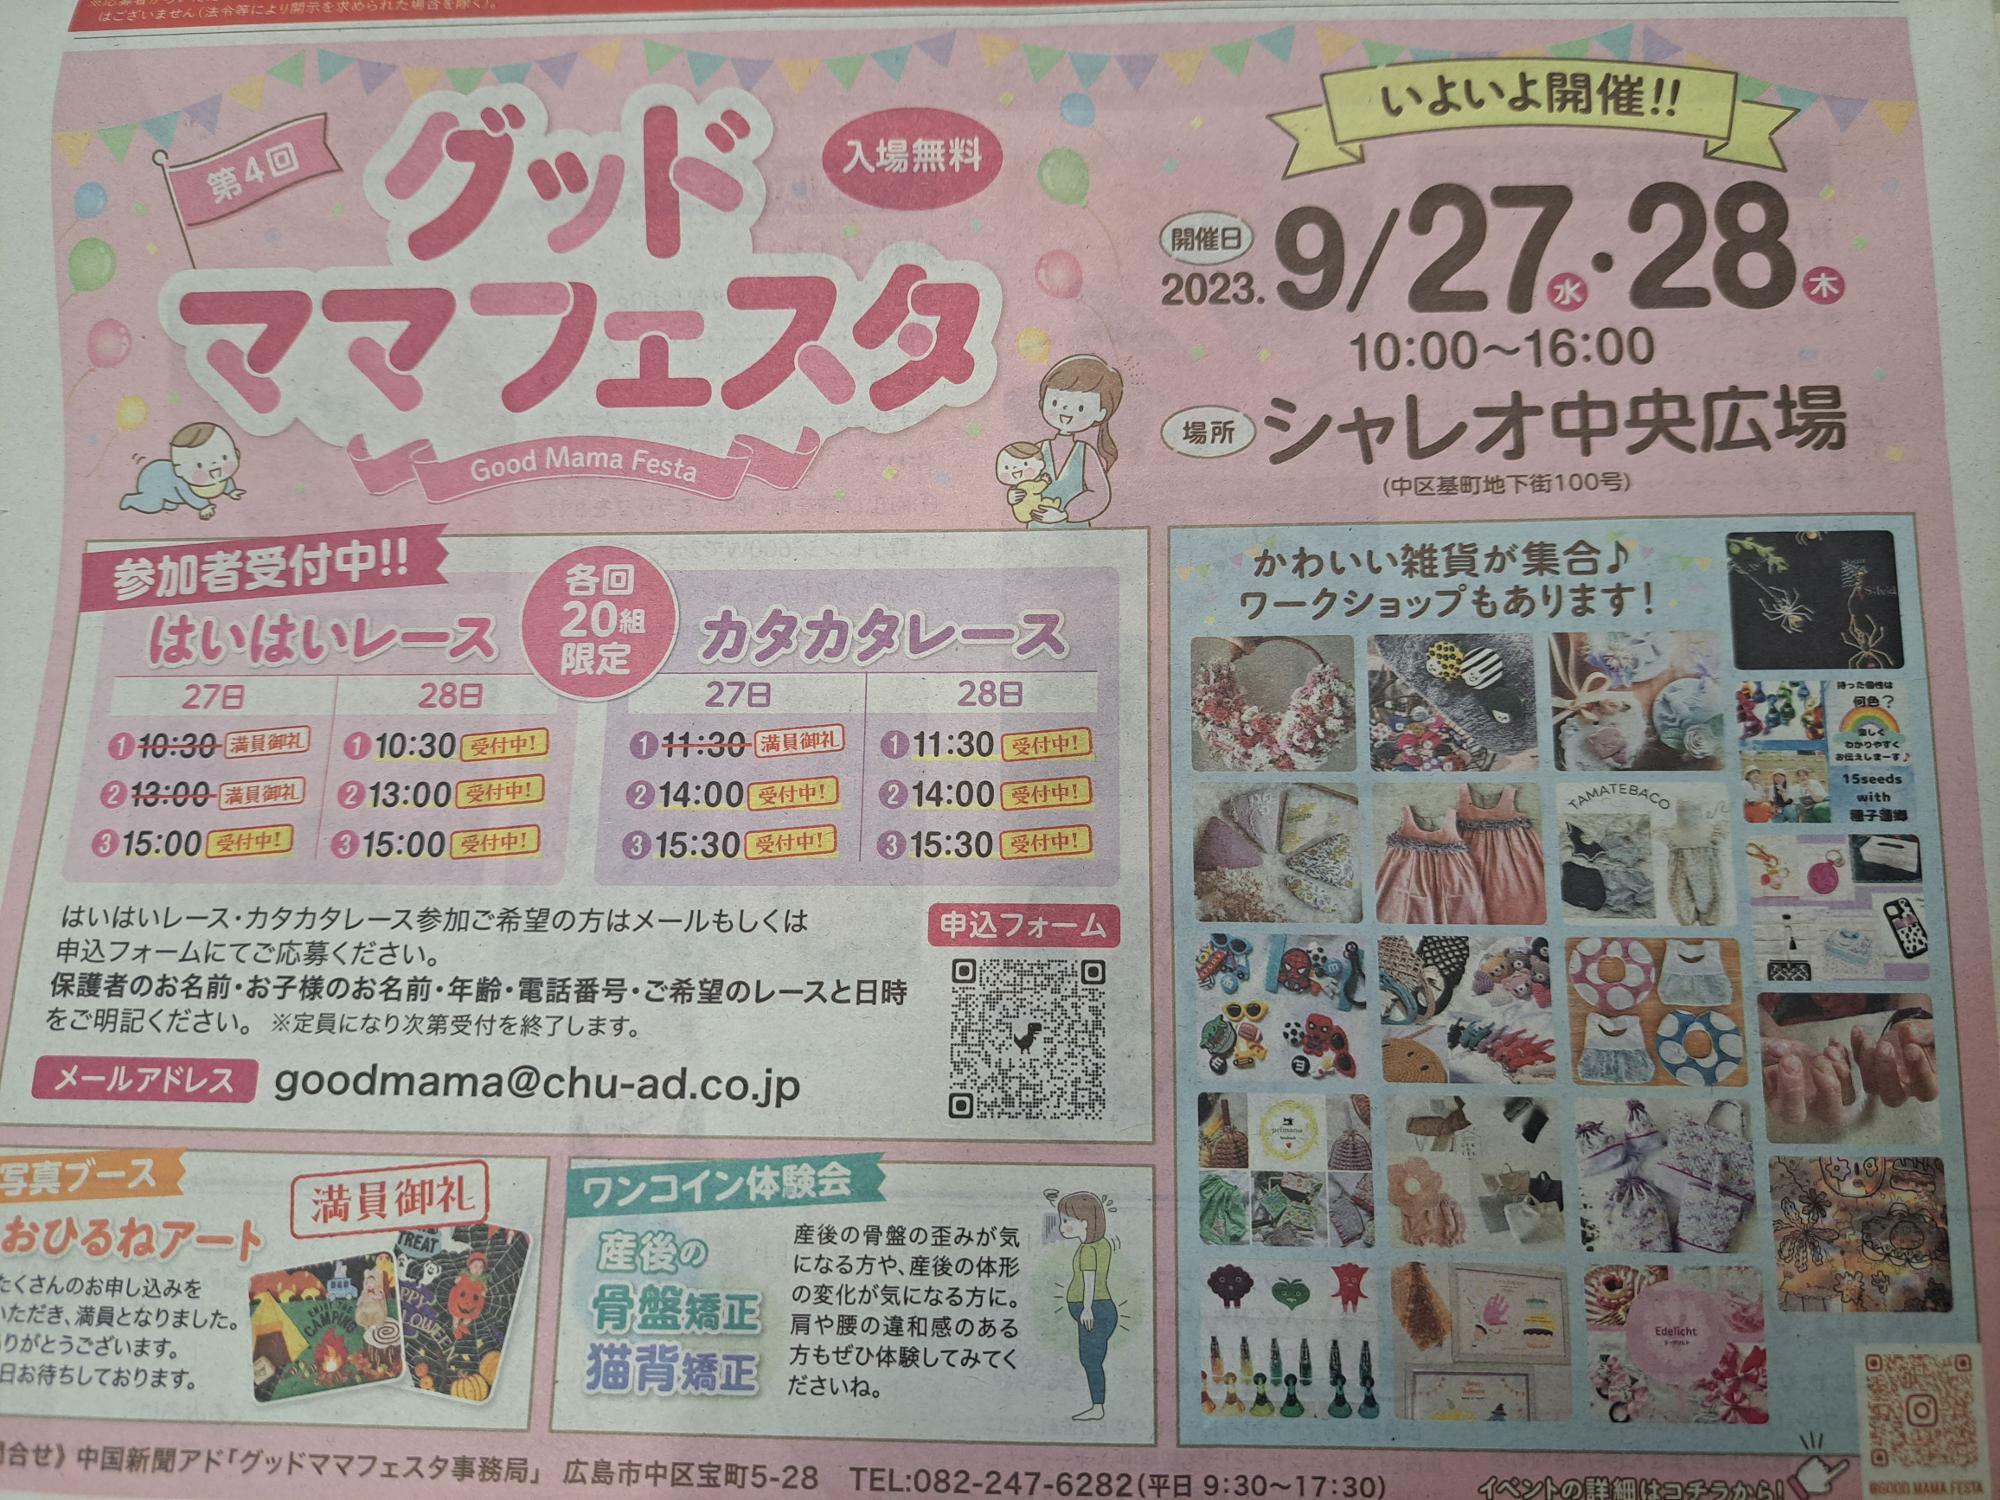 広島市中区】グッドママフェスタがシャレオで開催予定！ はいはい